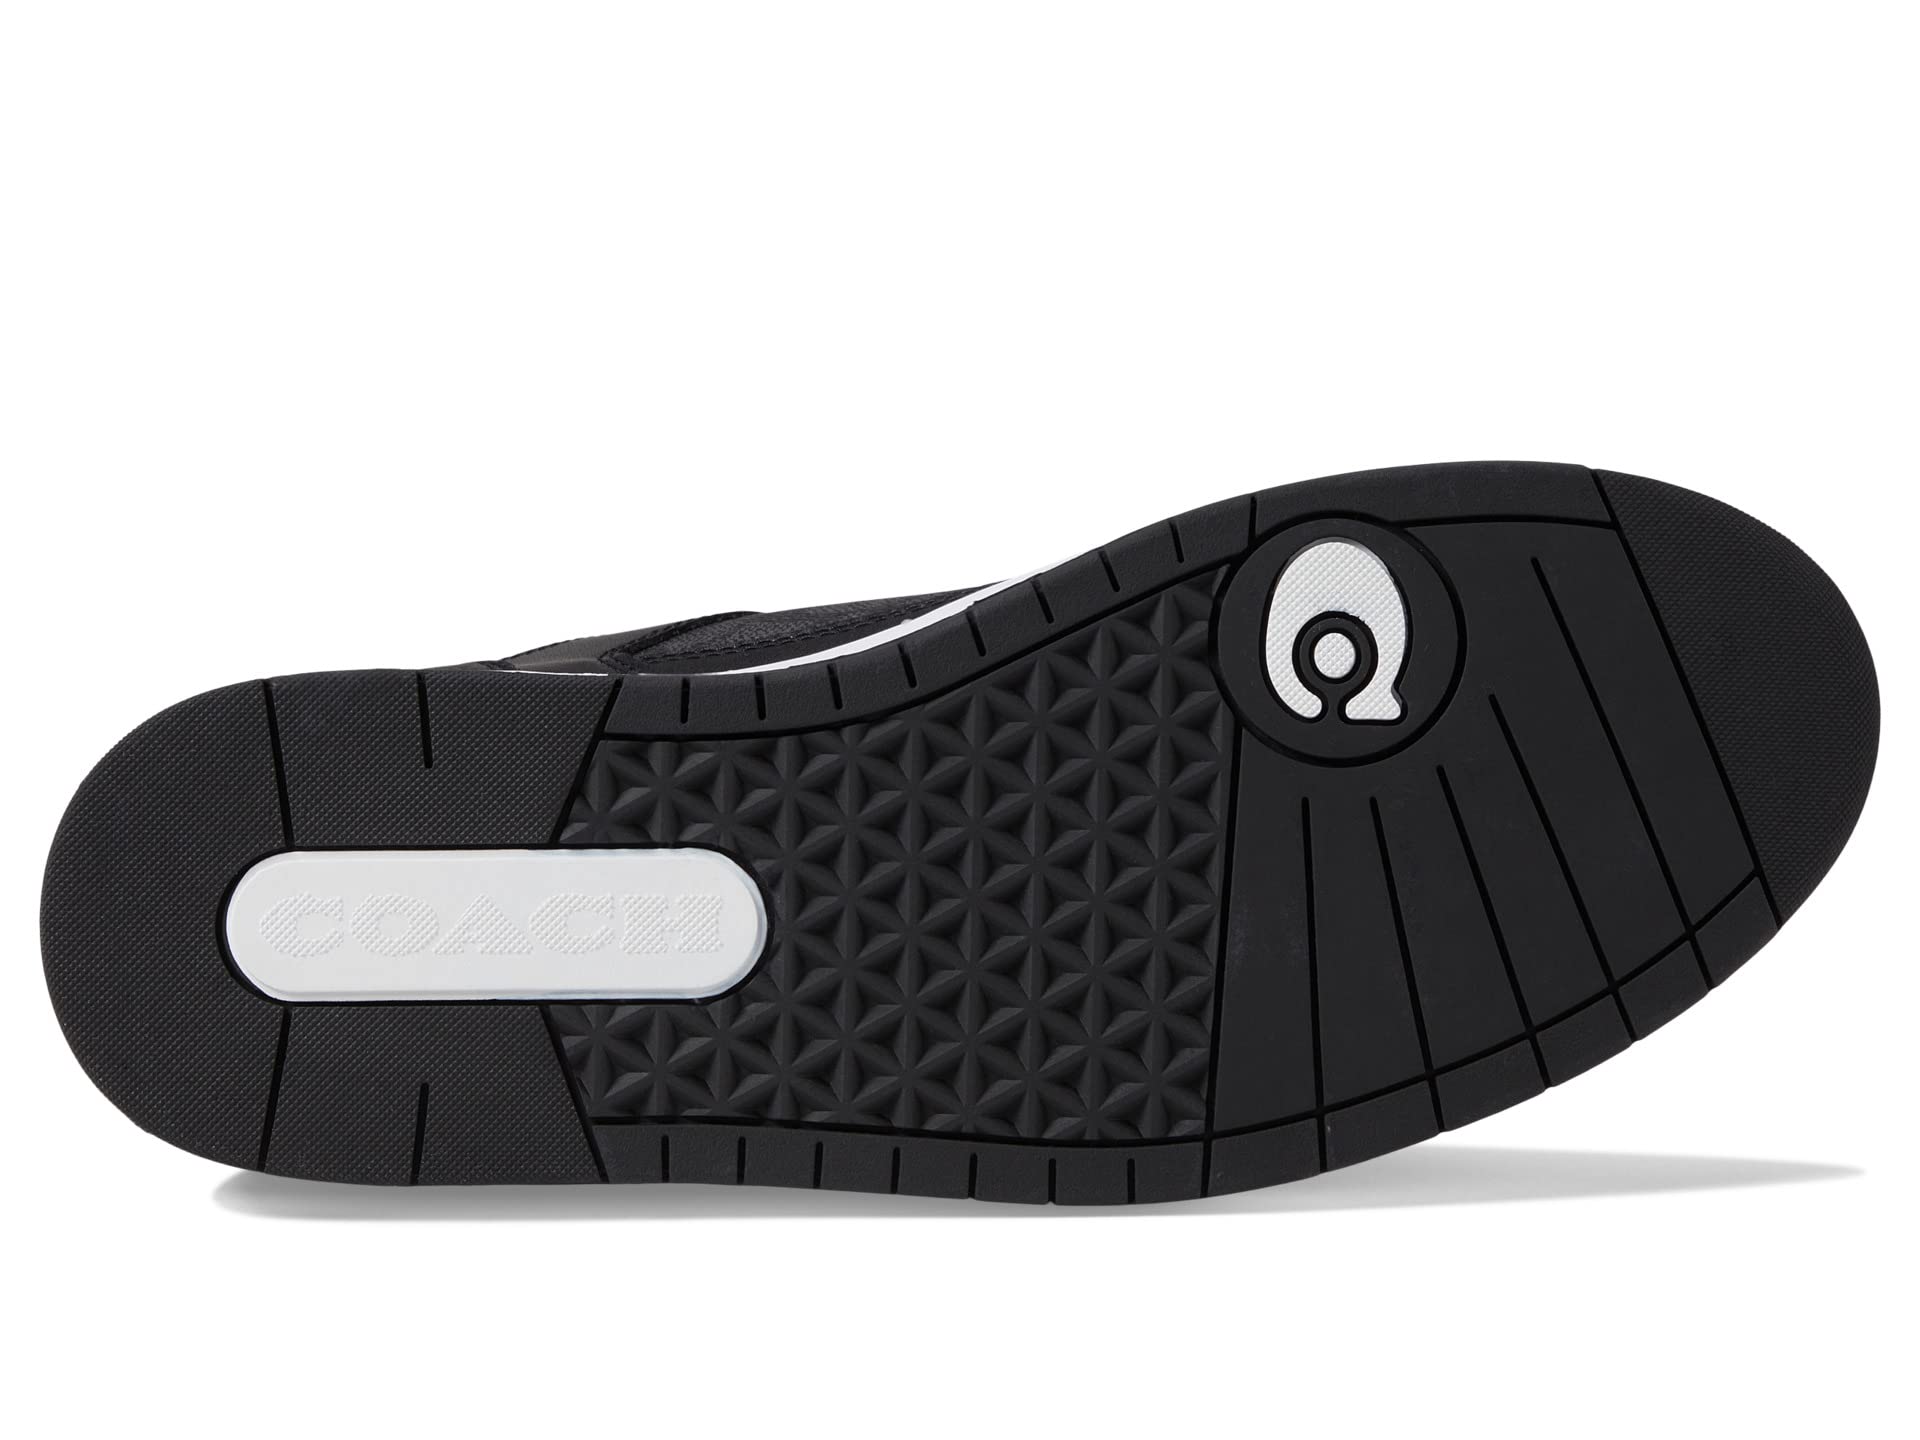 Кроссовки COACH C201 Signature Sneaker, черный кроссовки coach c201 signature цвет optic white